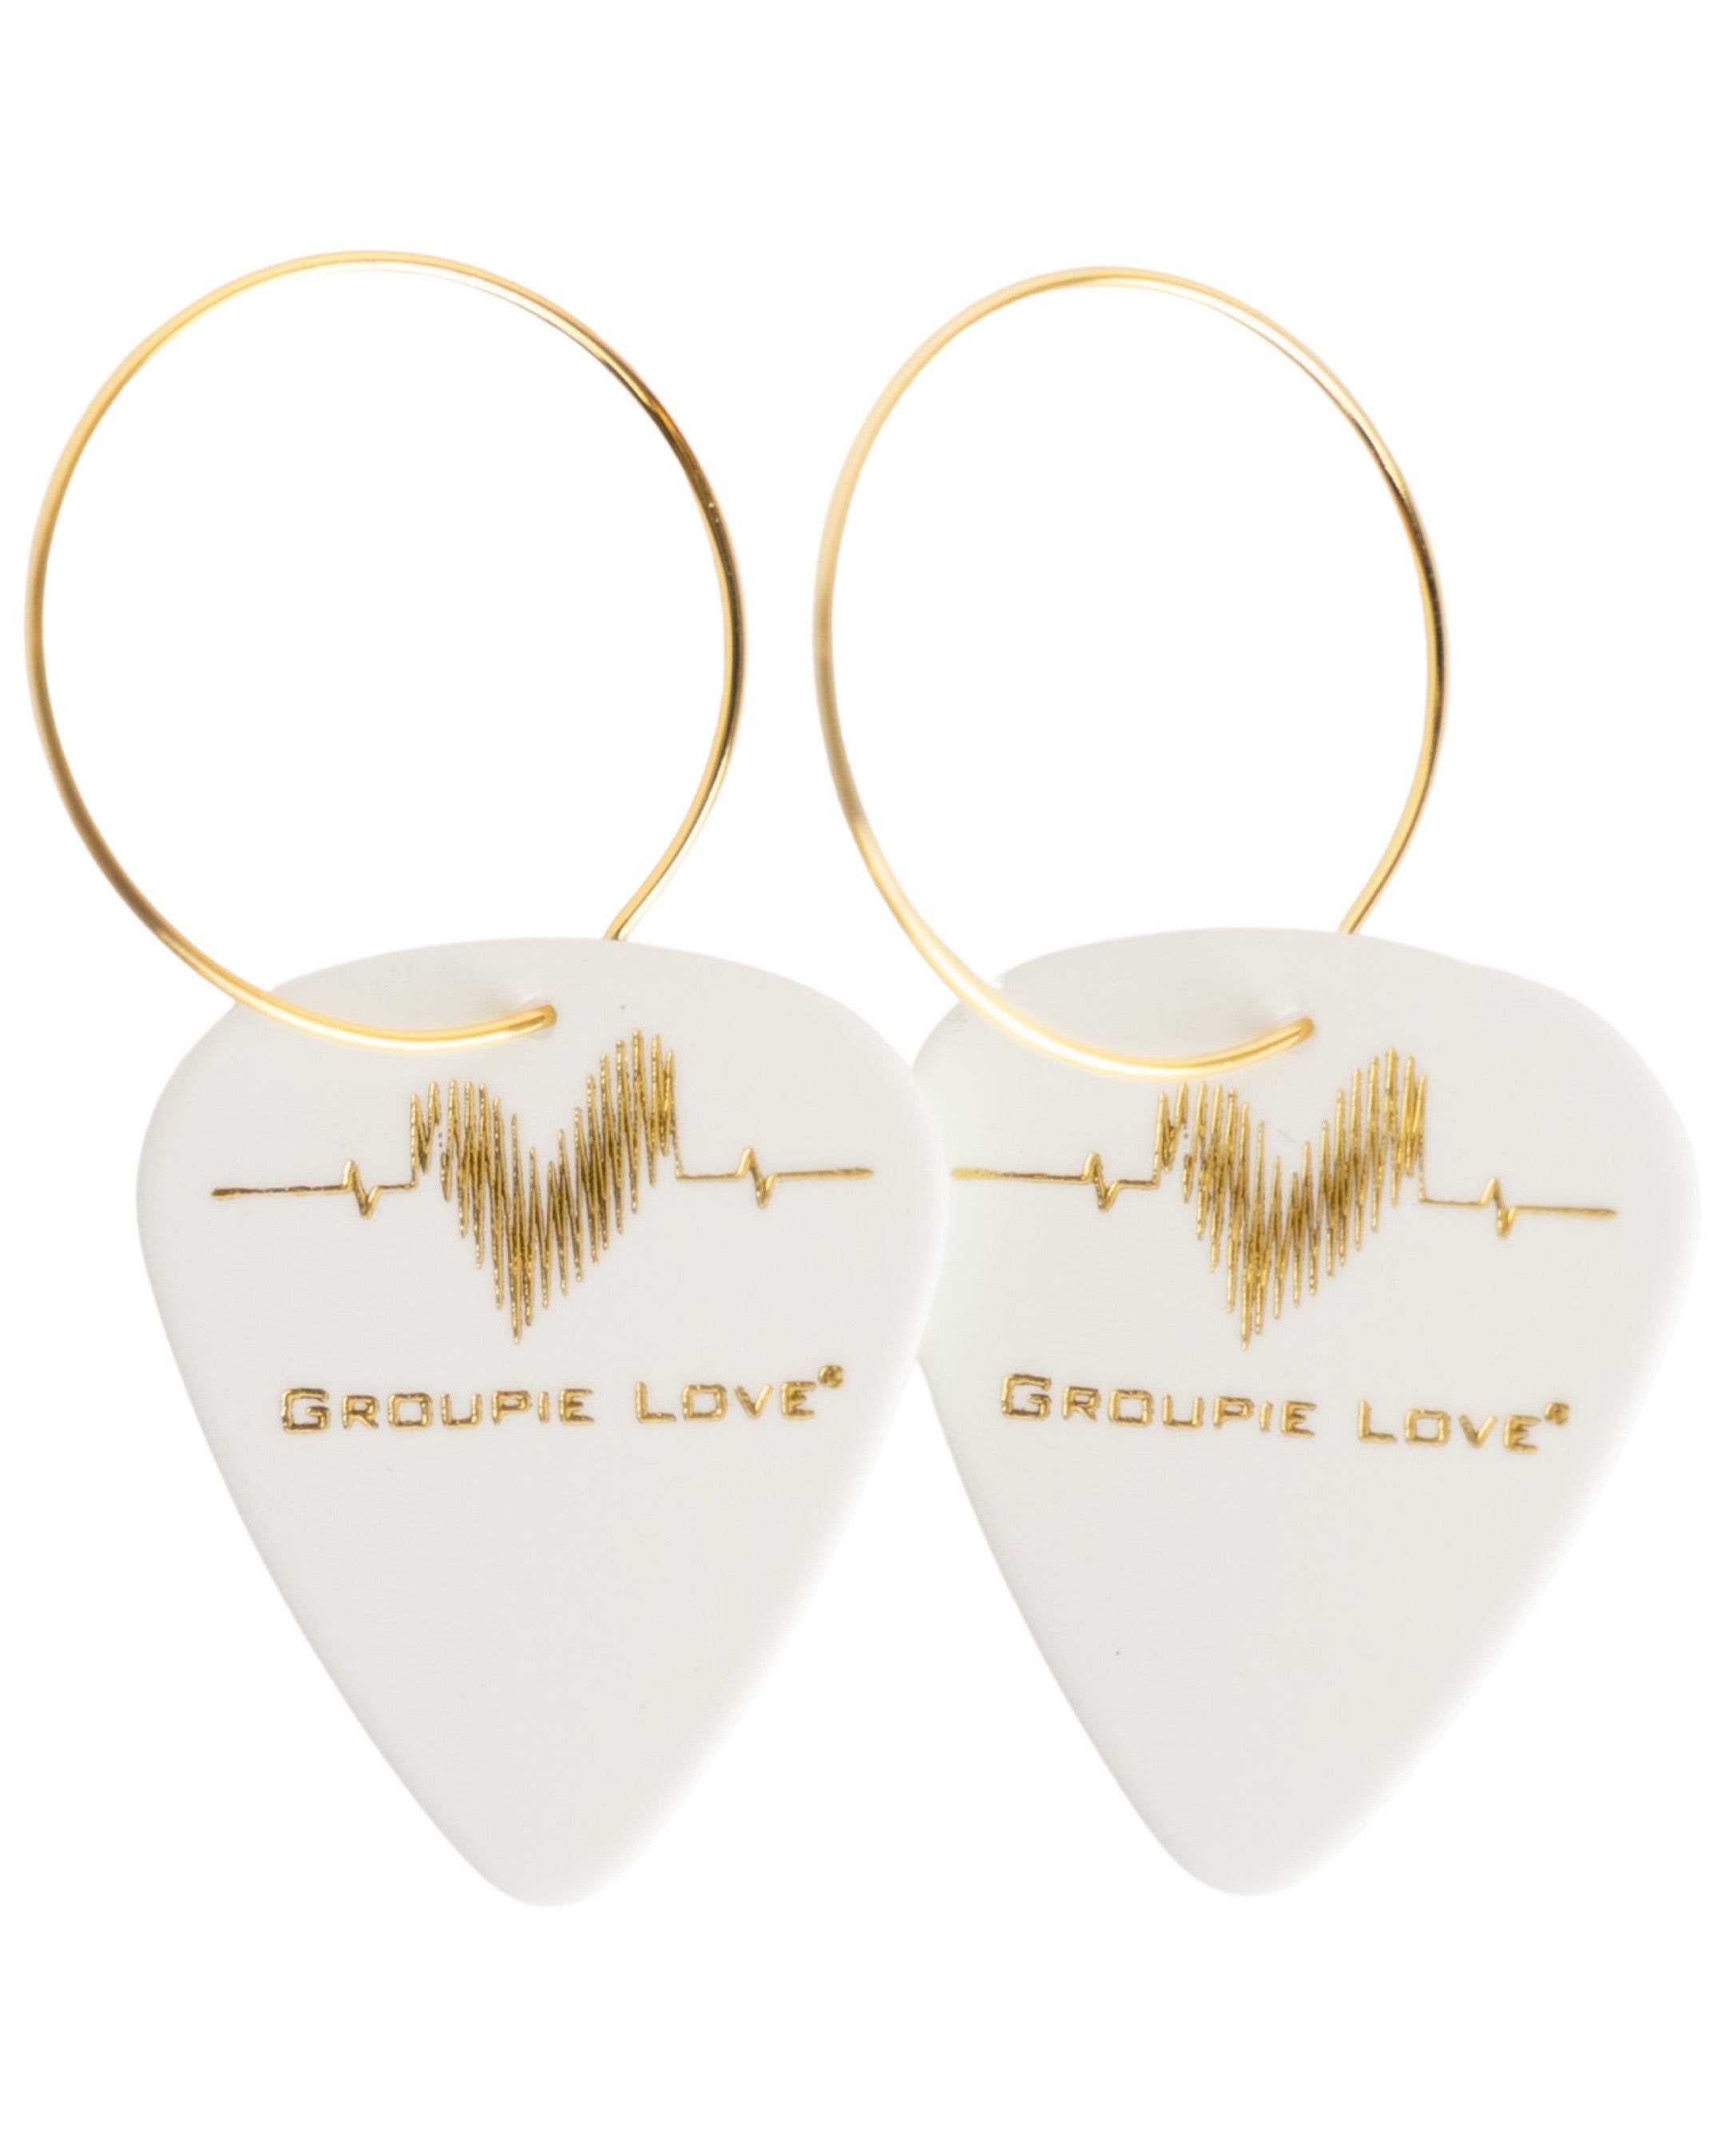 Groupie Love White Gold Single Guitar Pick Earrings